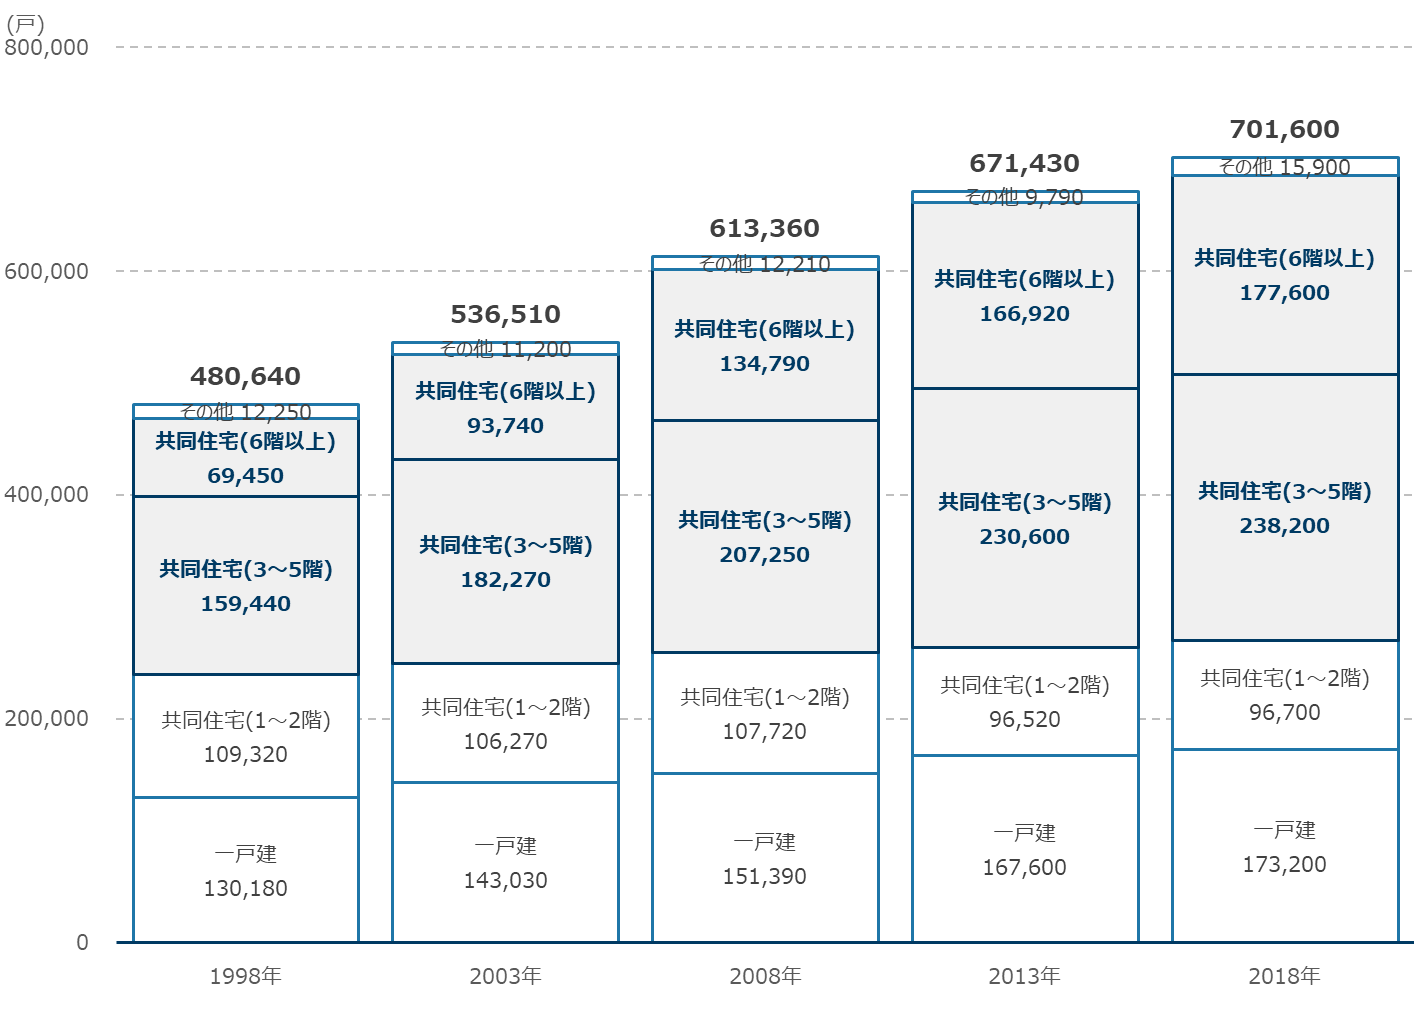 川崎市における建て方別住宅戸数の推移